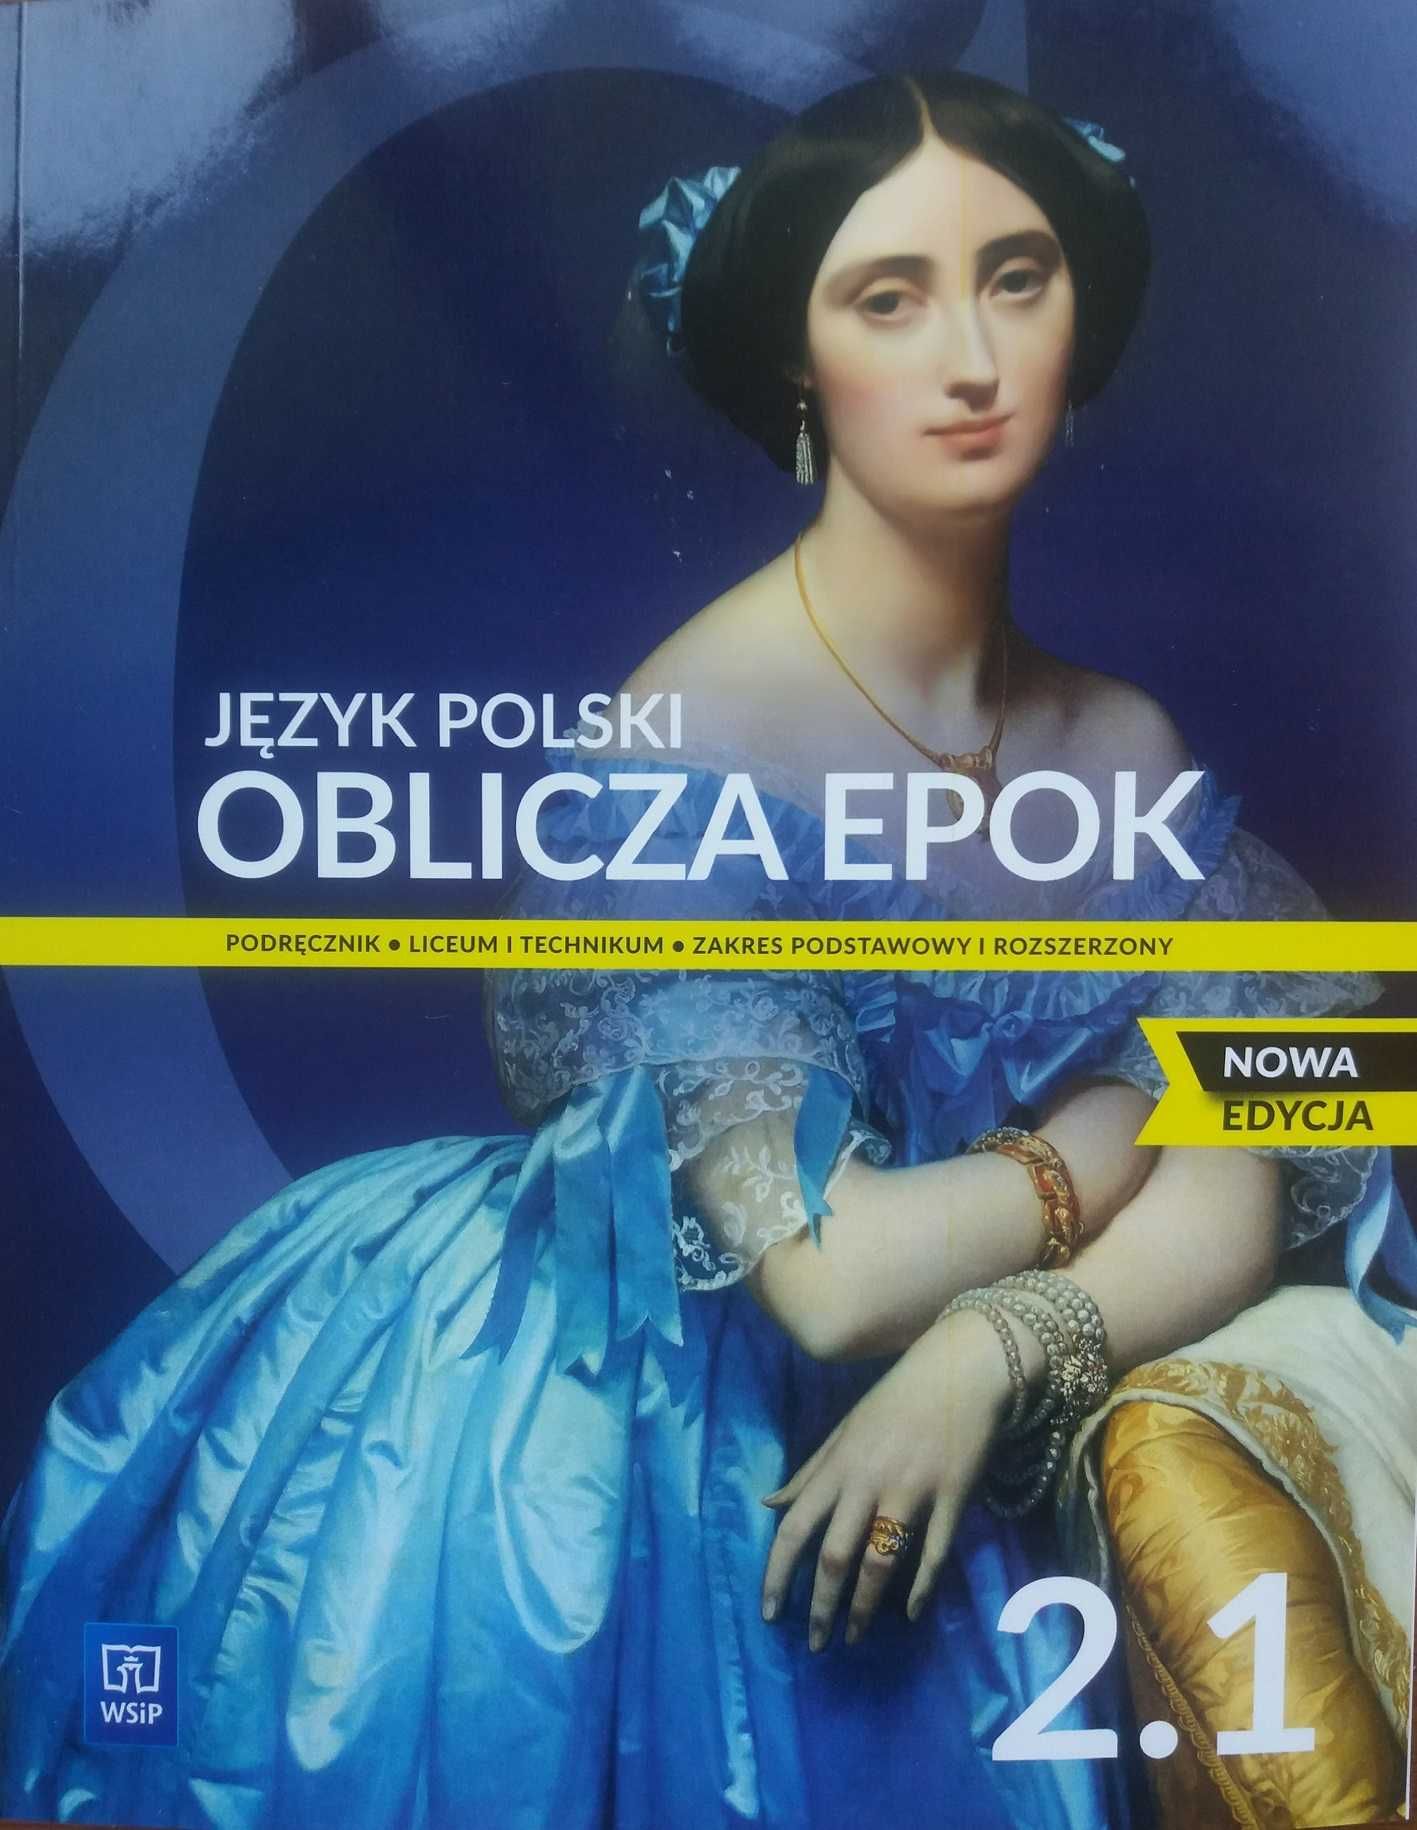 J. Polski 2/1 Oblicza epok podr. ZP i ZR WSiP Nowość!